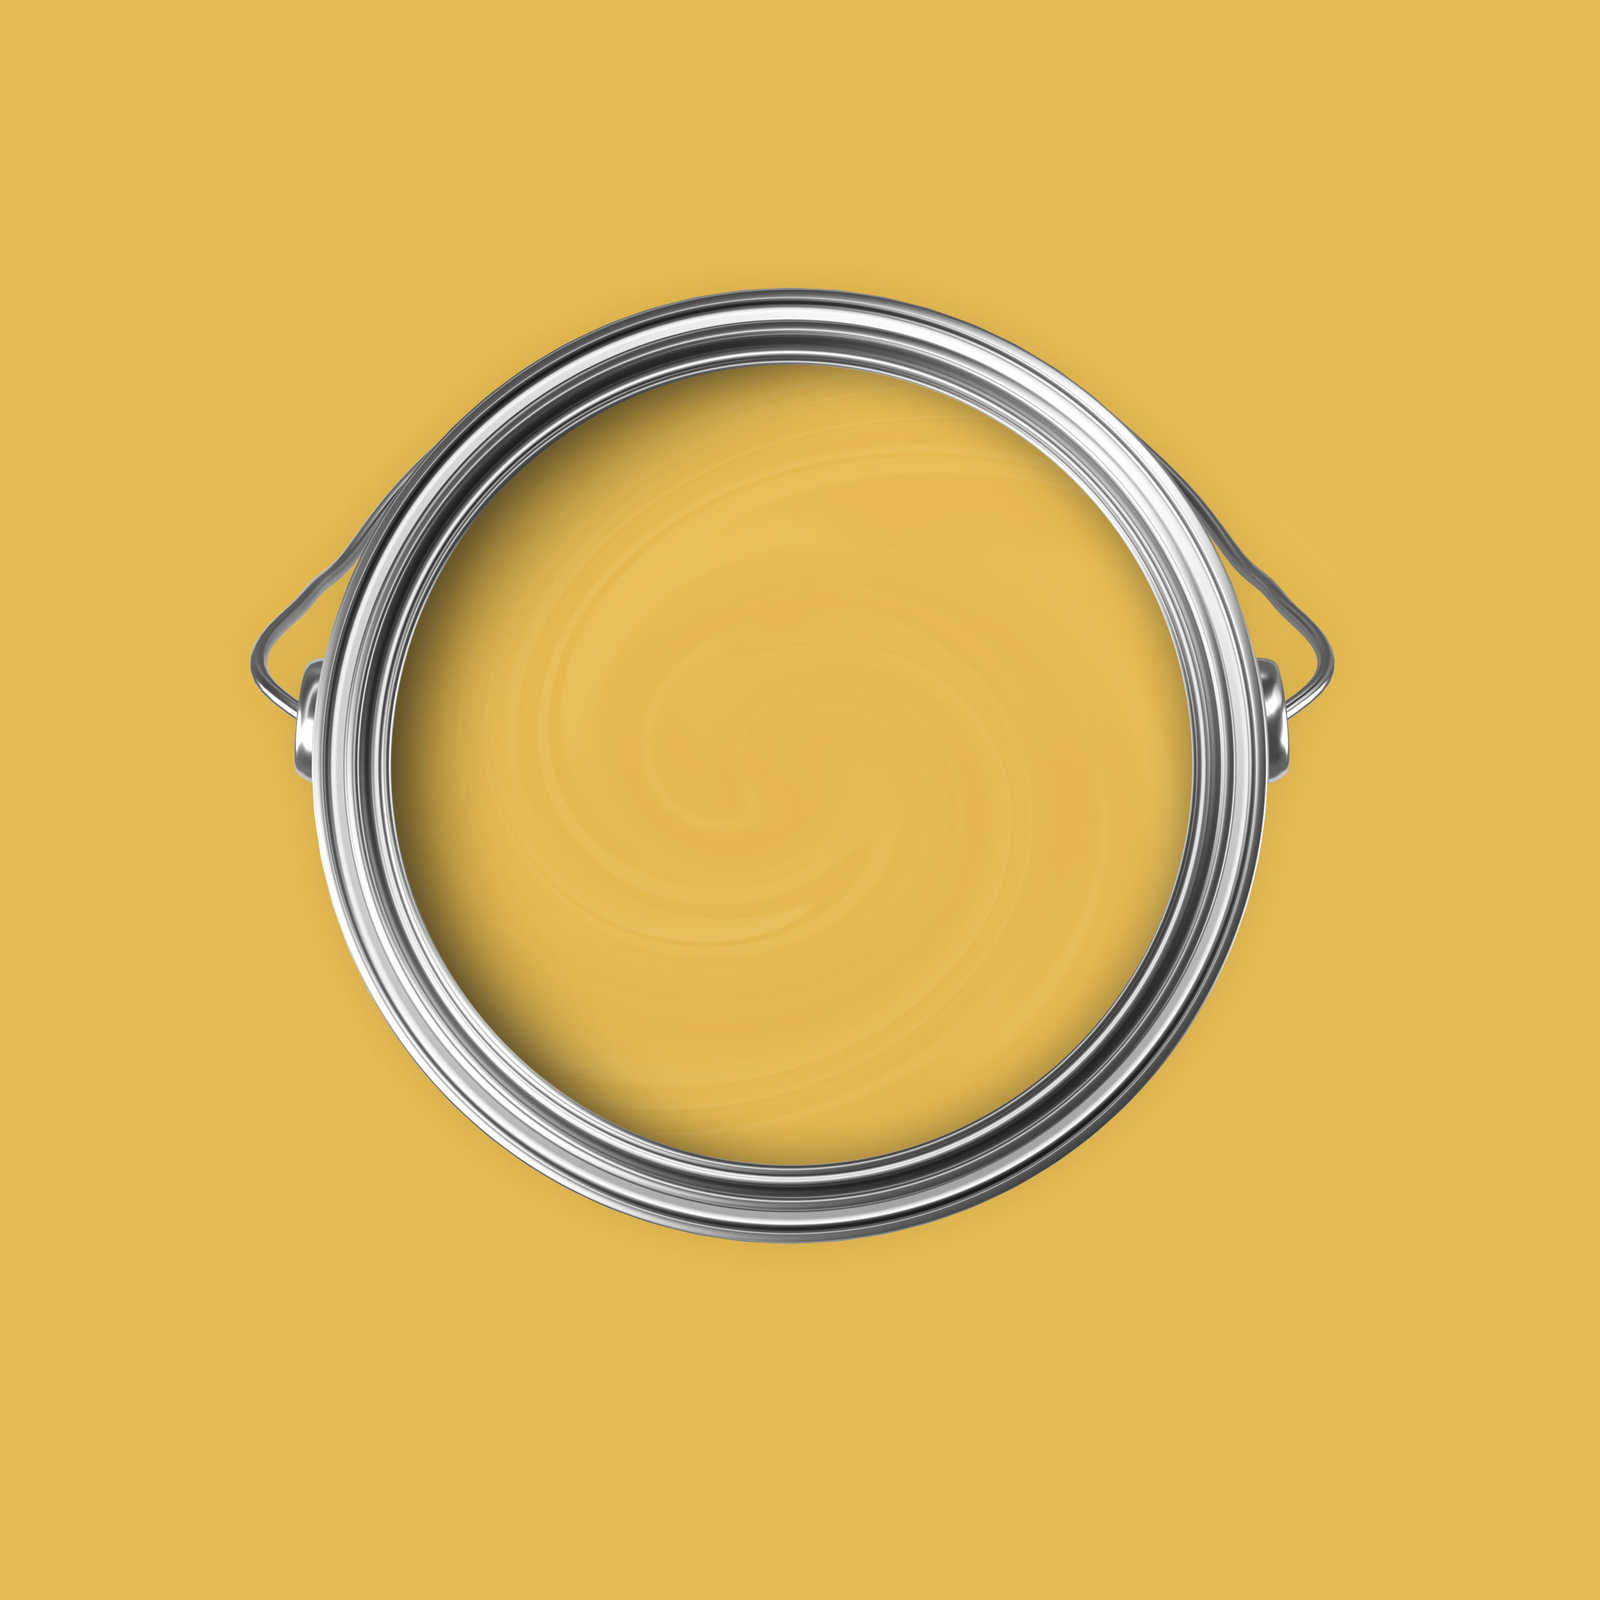             Premium Muurverf Stralend Mosterdgeel »Juicy Yellow« NW802 – 5 liter
        